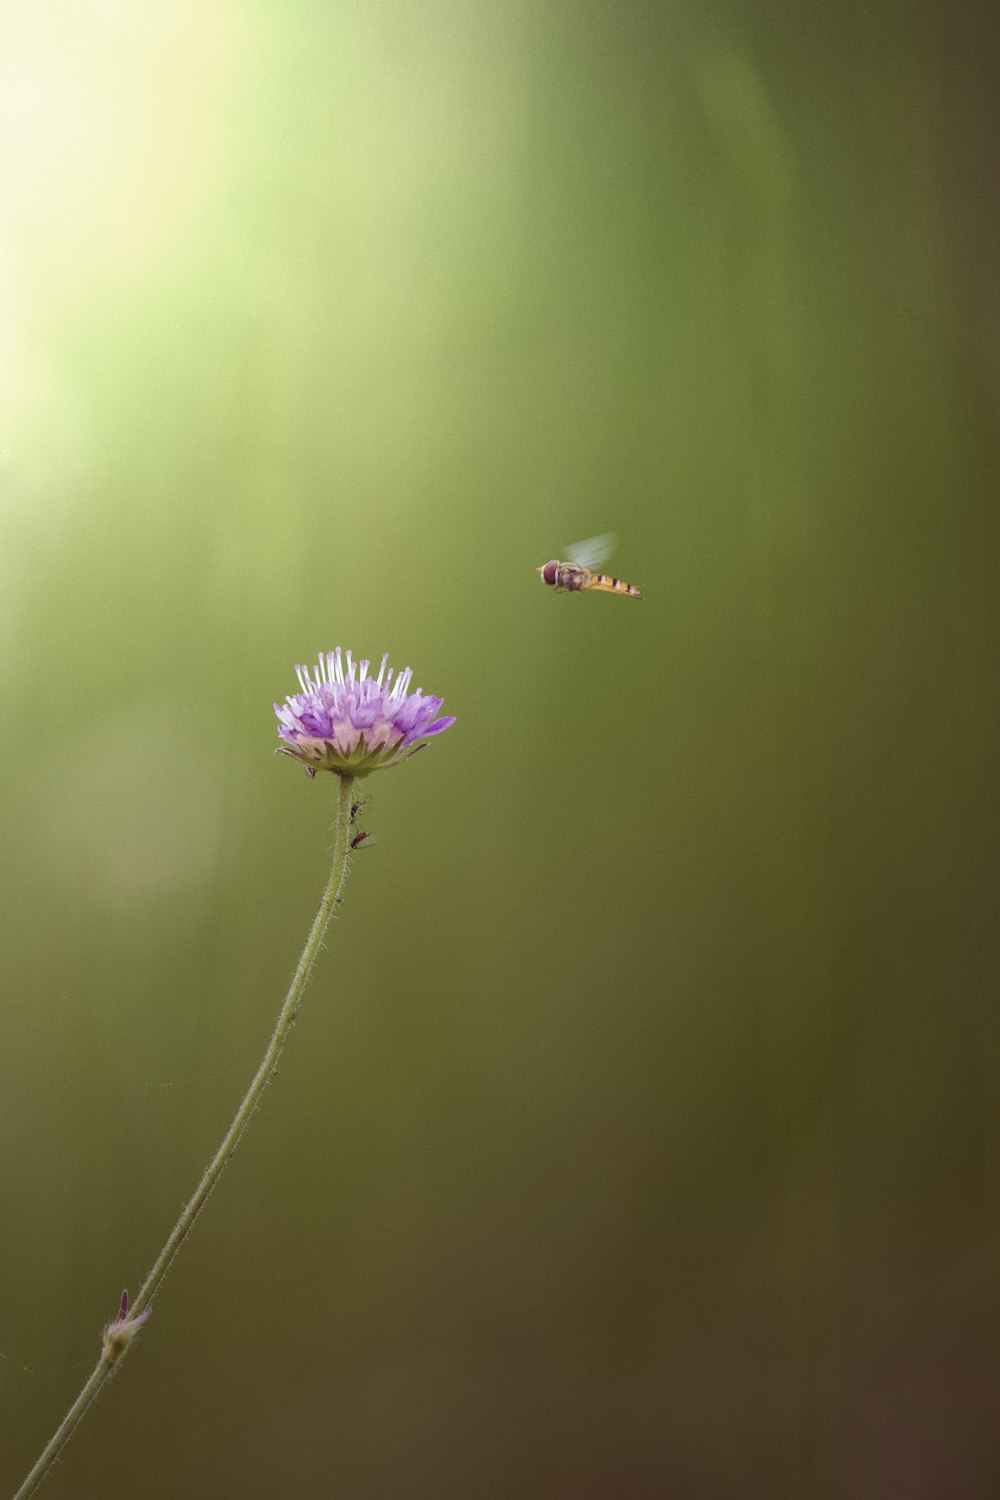 Una mariposa volando sobre una flor